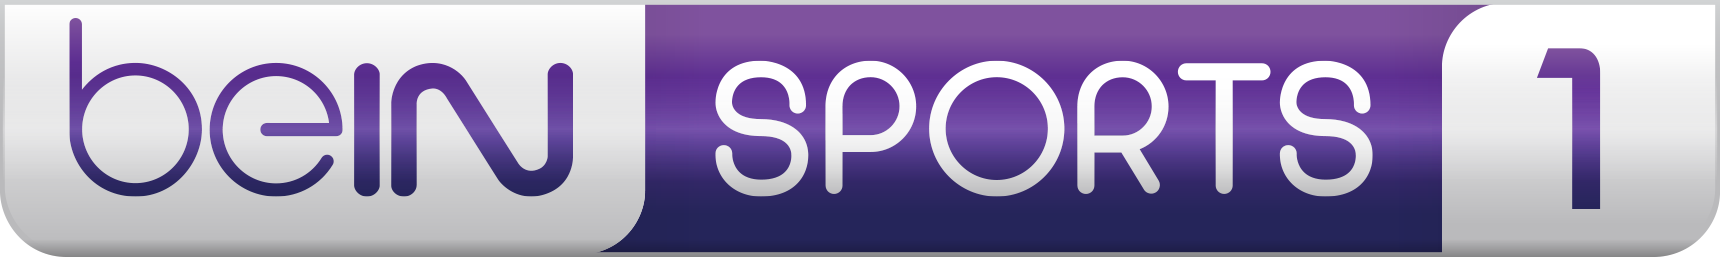 Logo Bein Sport Png